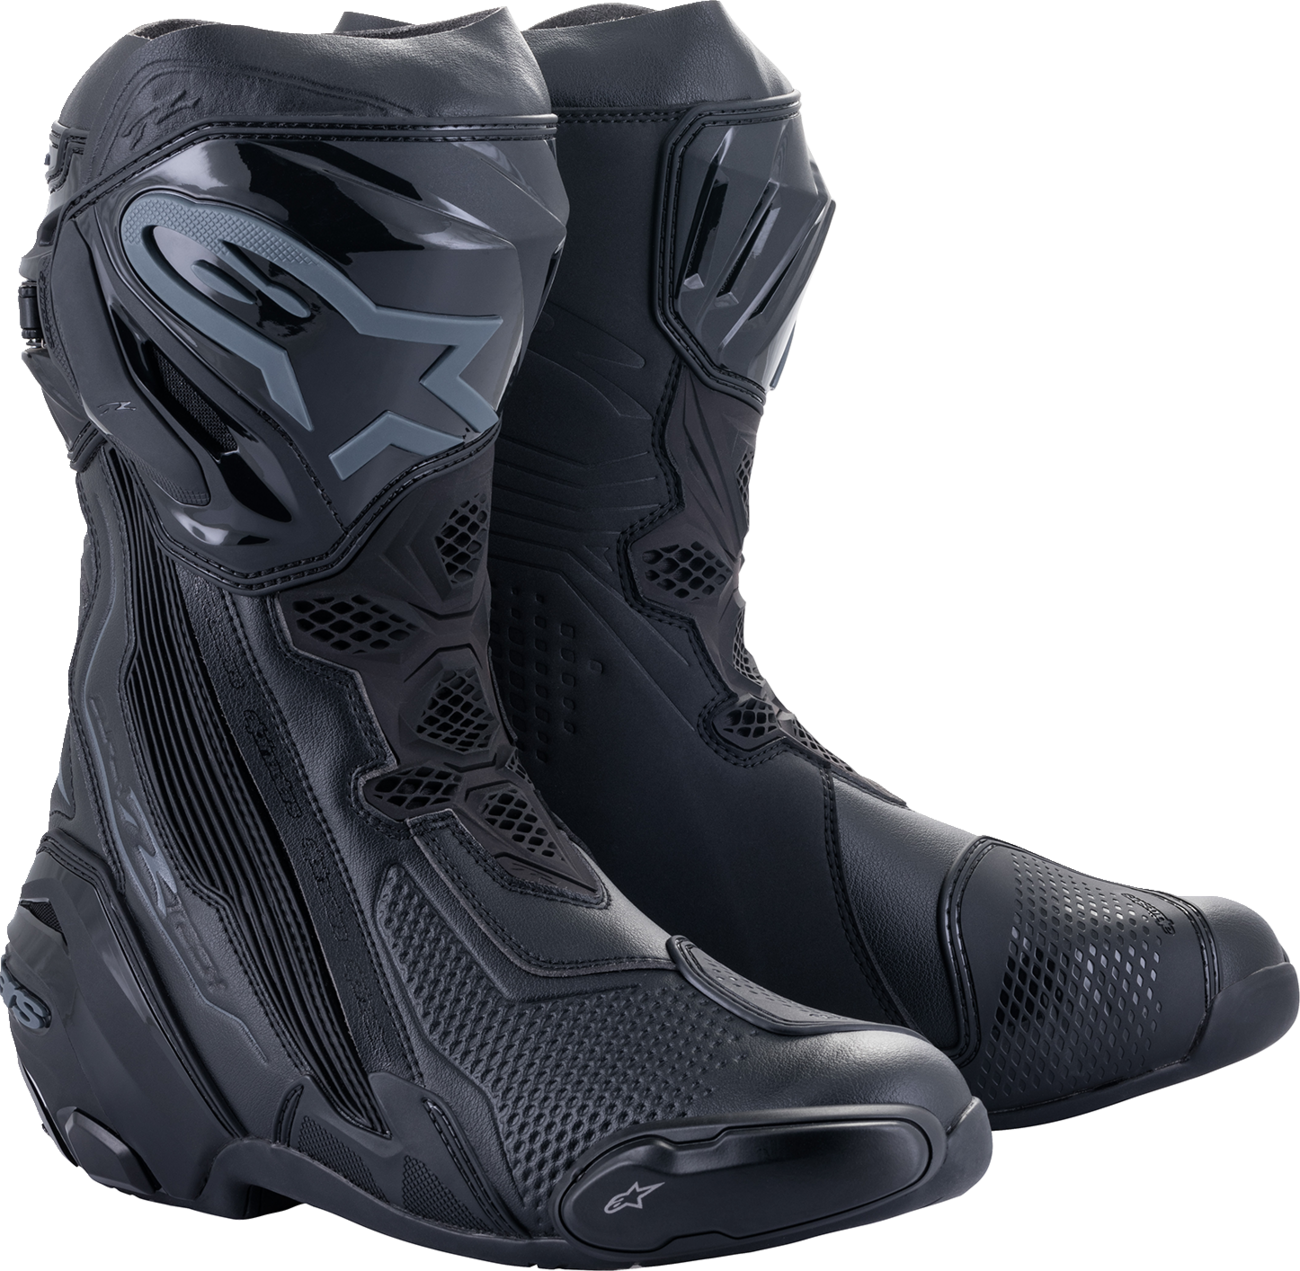 ALPINESTARS Supertech R Boots - Black - US 11.5 / EU 46 2220021-1100-46